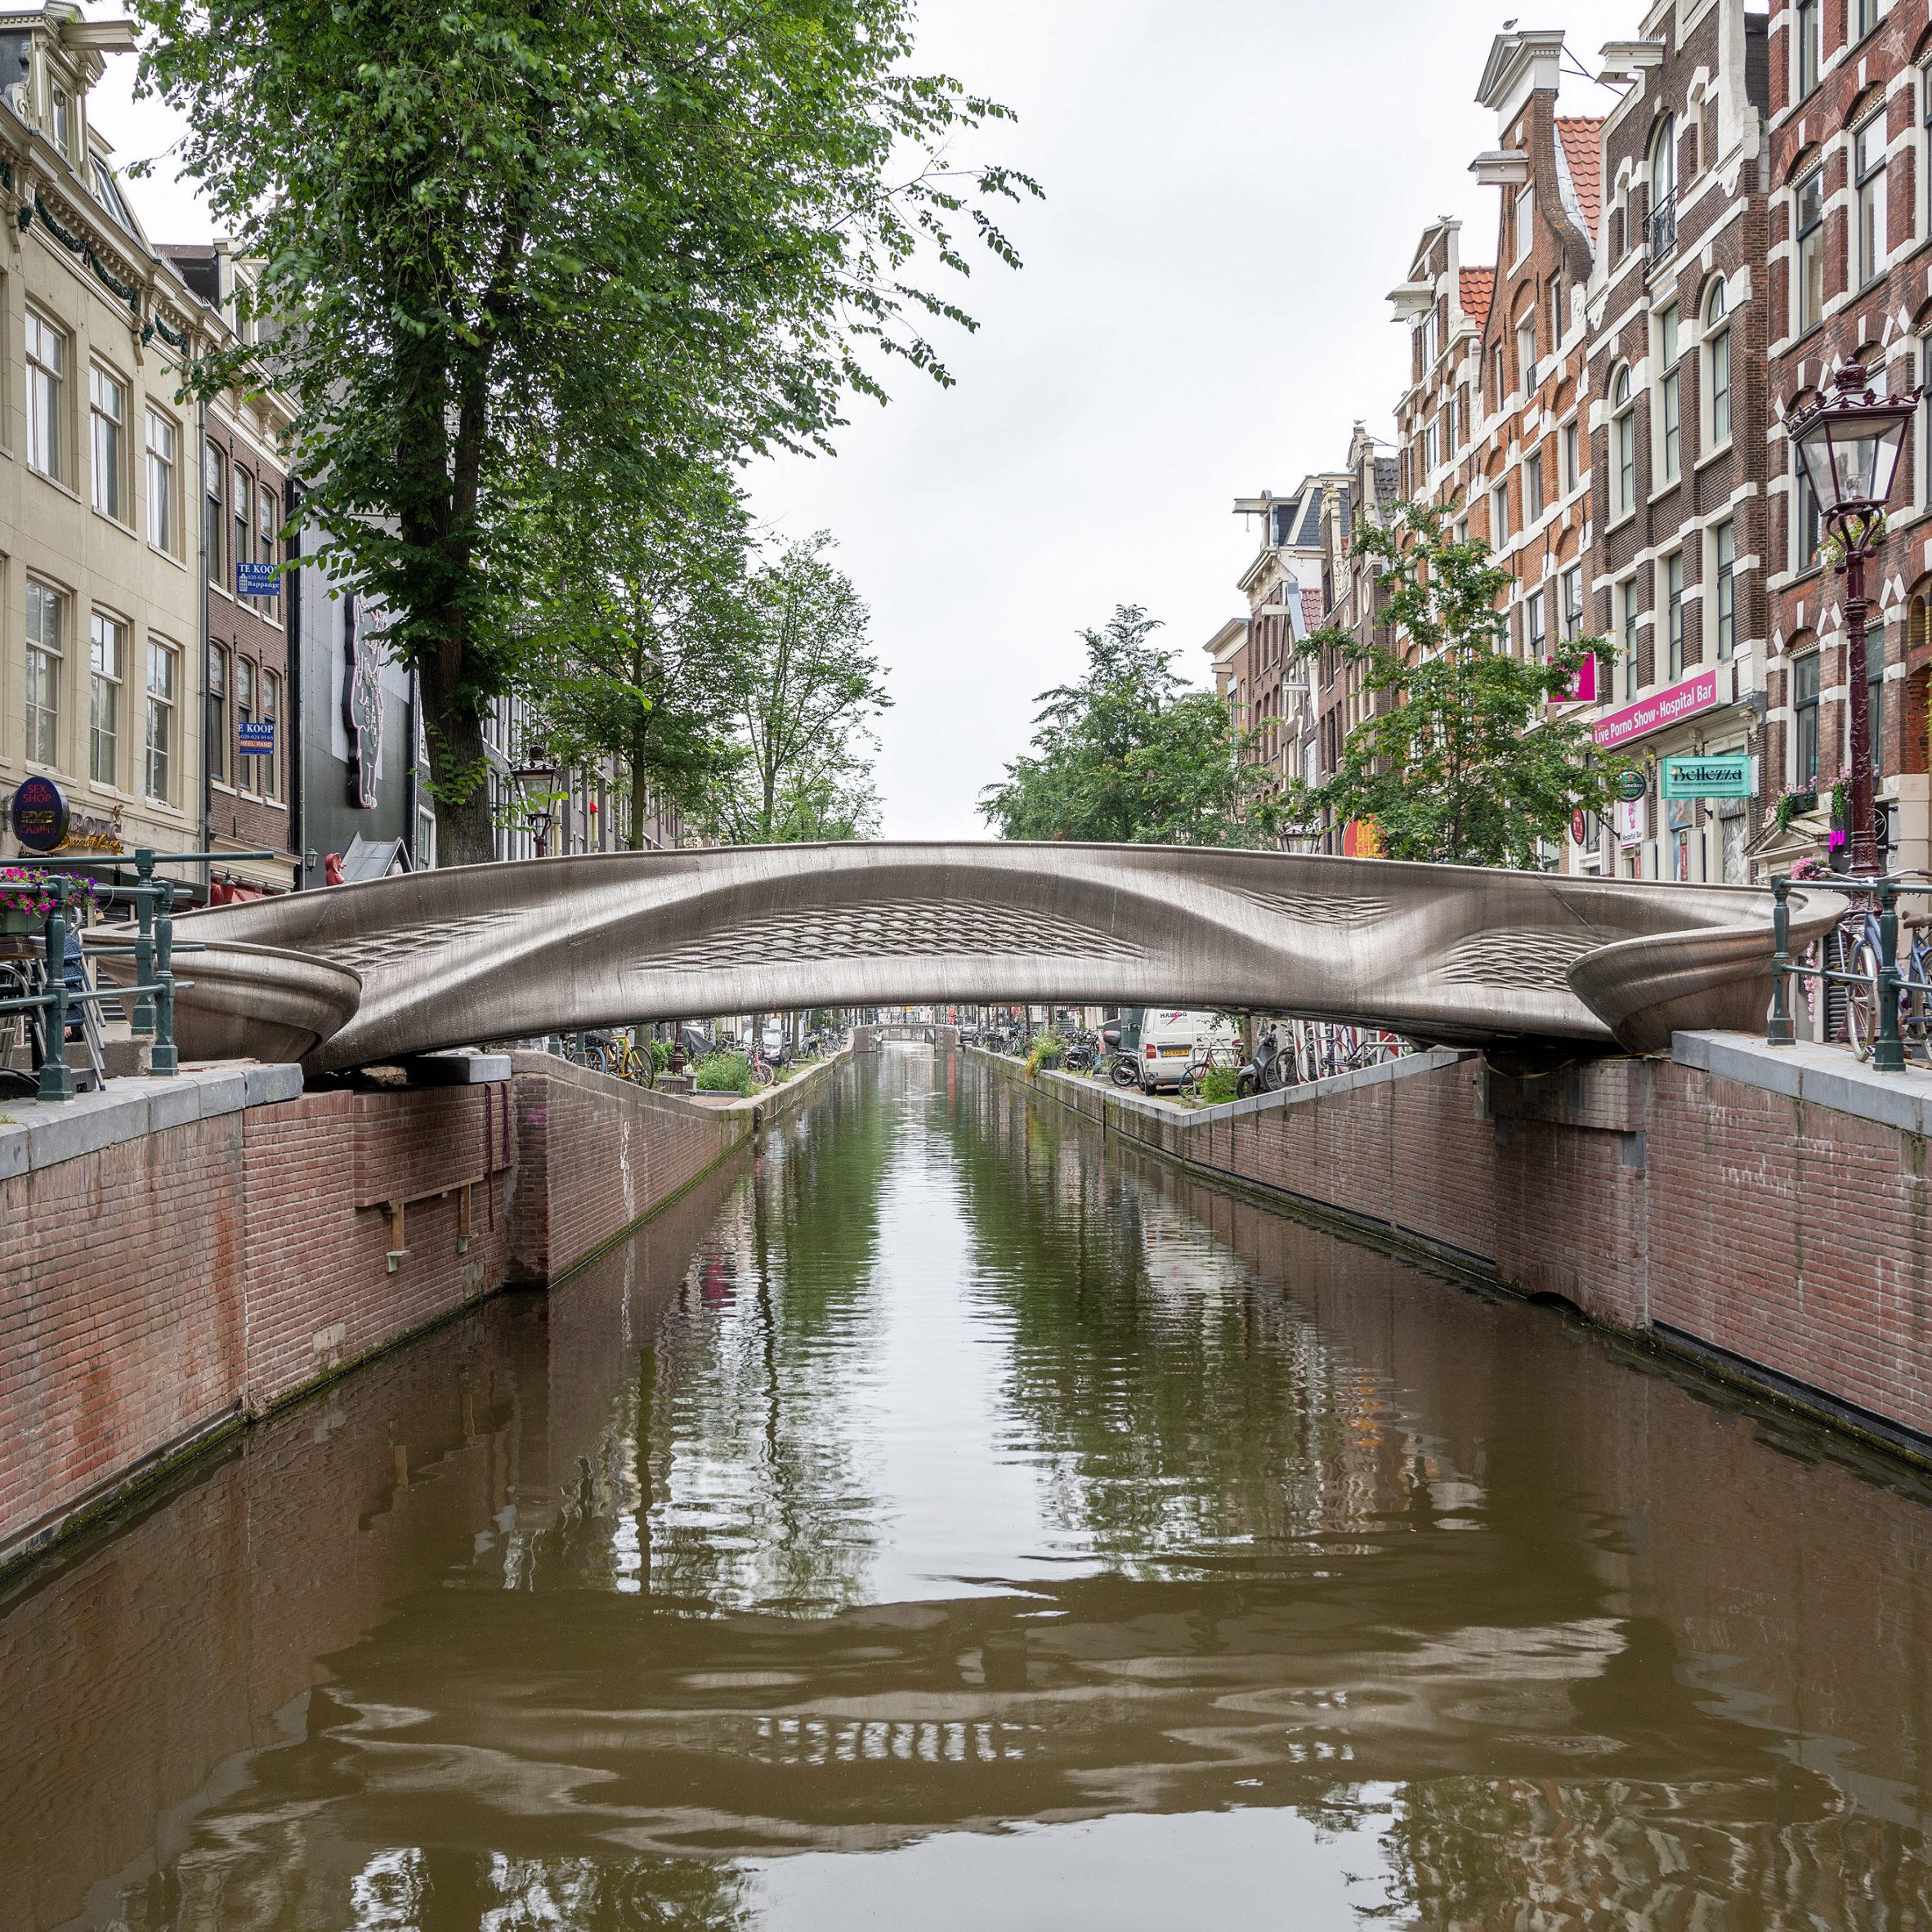 Long-awaited stainless steel bridge opens Amsterdam